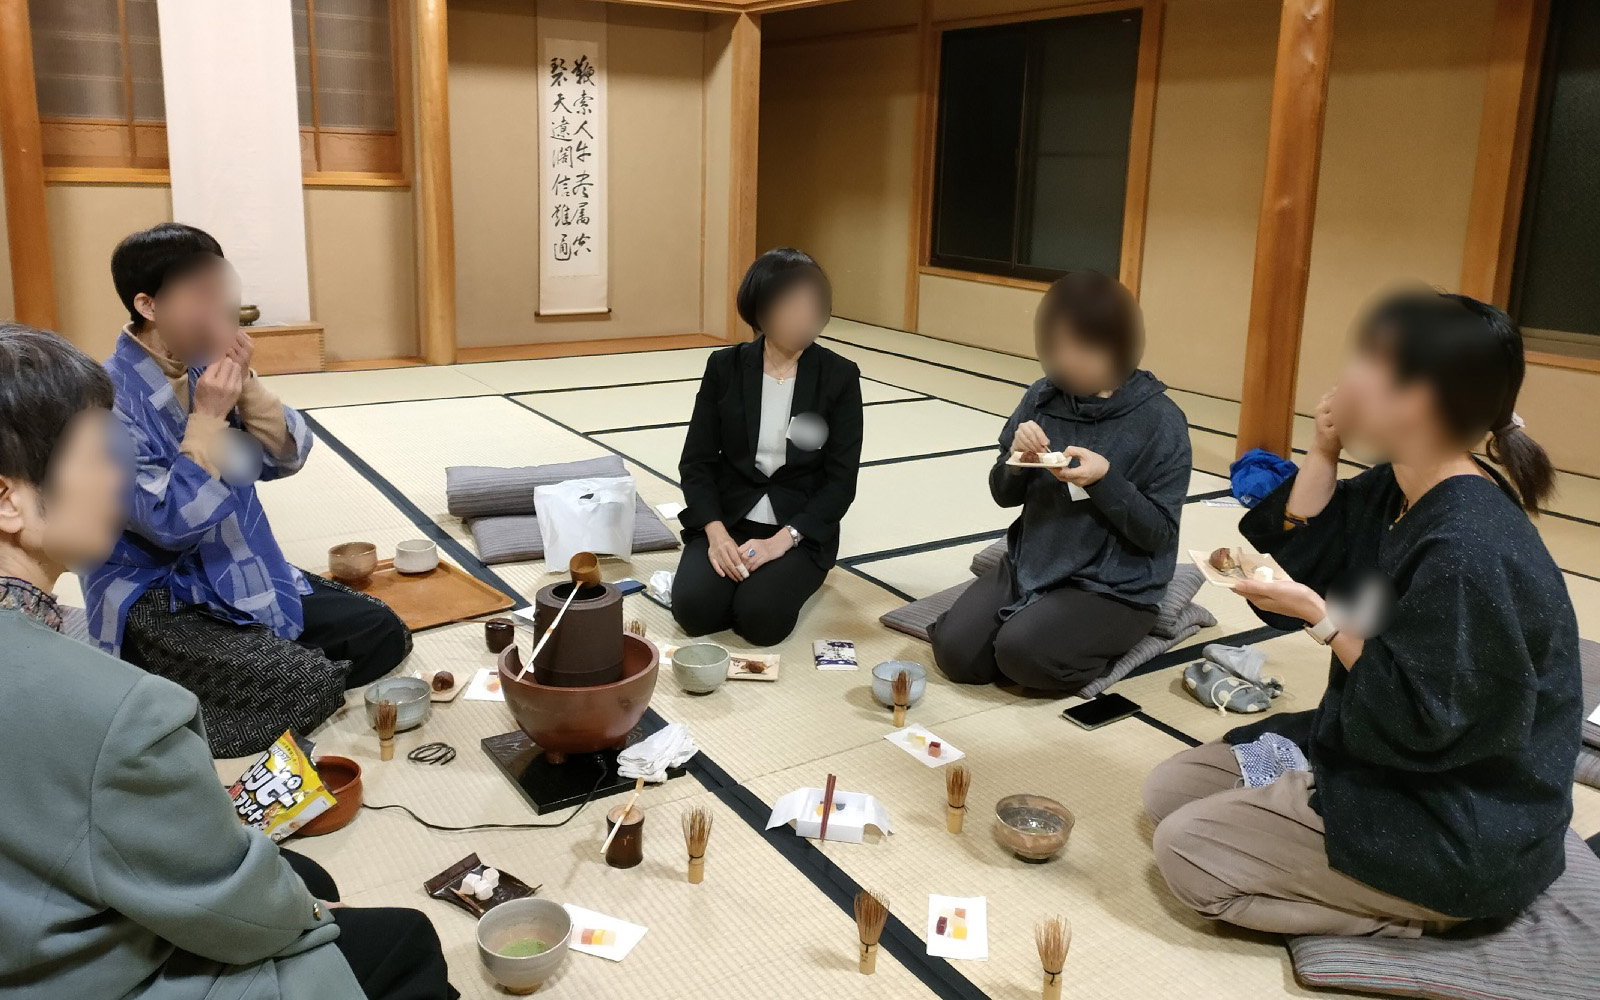 2210微笑会10_禅堂でお抹茶を飲む女性たちトリミング_.jpg